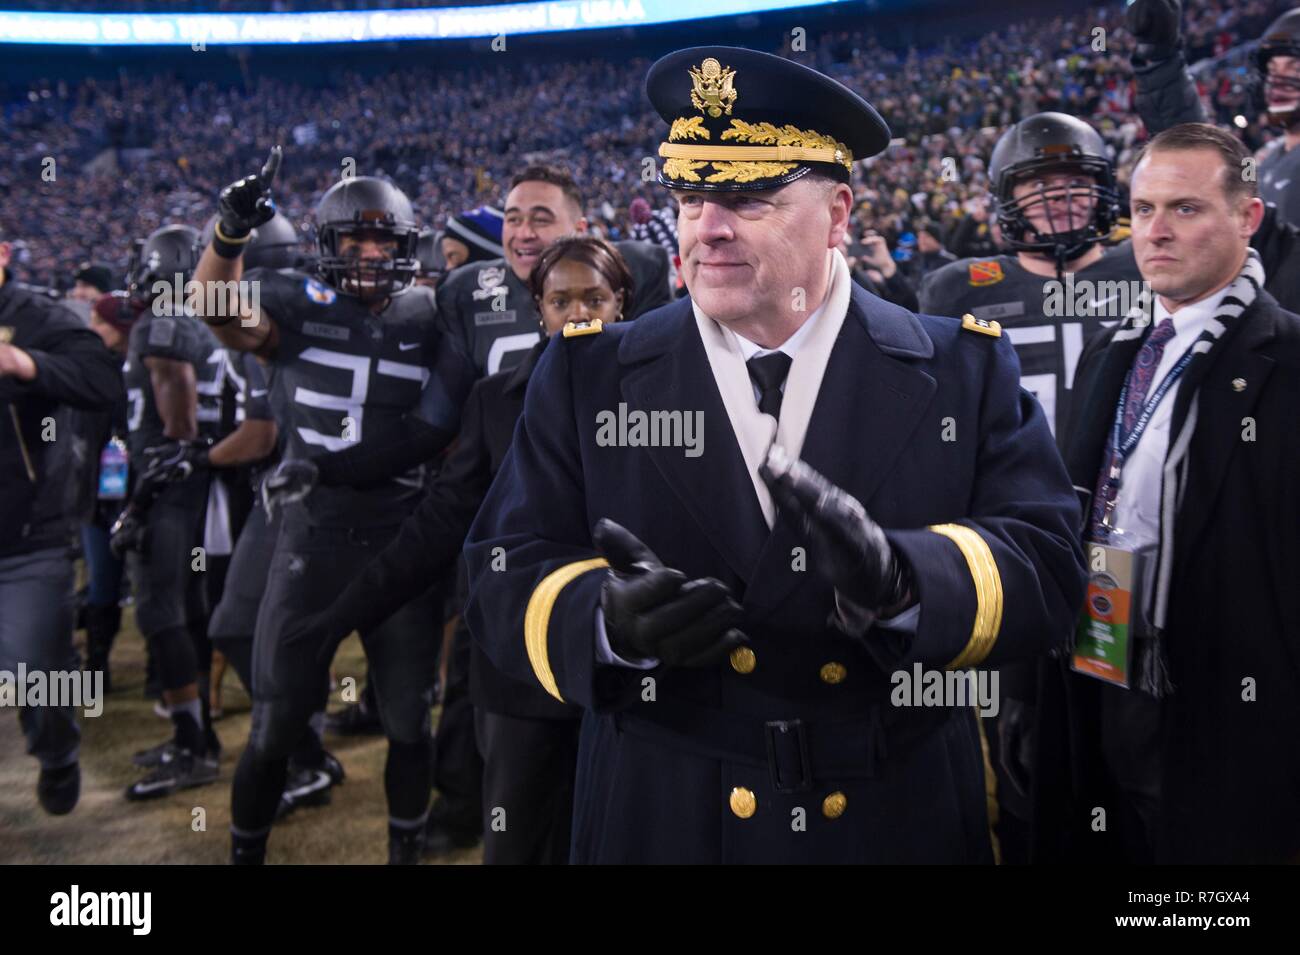 Chef de l'armée américaine, le général Mark Milley, assiste à l'Army-Navy game au Lincoln Financial Field, 10 décembre 2016 à Philadelphie, Pennsylvanie. Milley a été choisi par le Président Donald Trump le 8 décembre 2018 pour être le prochain chef d'état-major interarmées. Banque D'Images